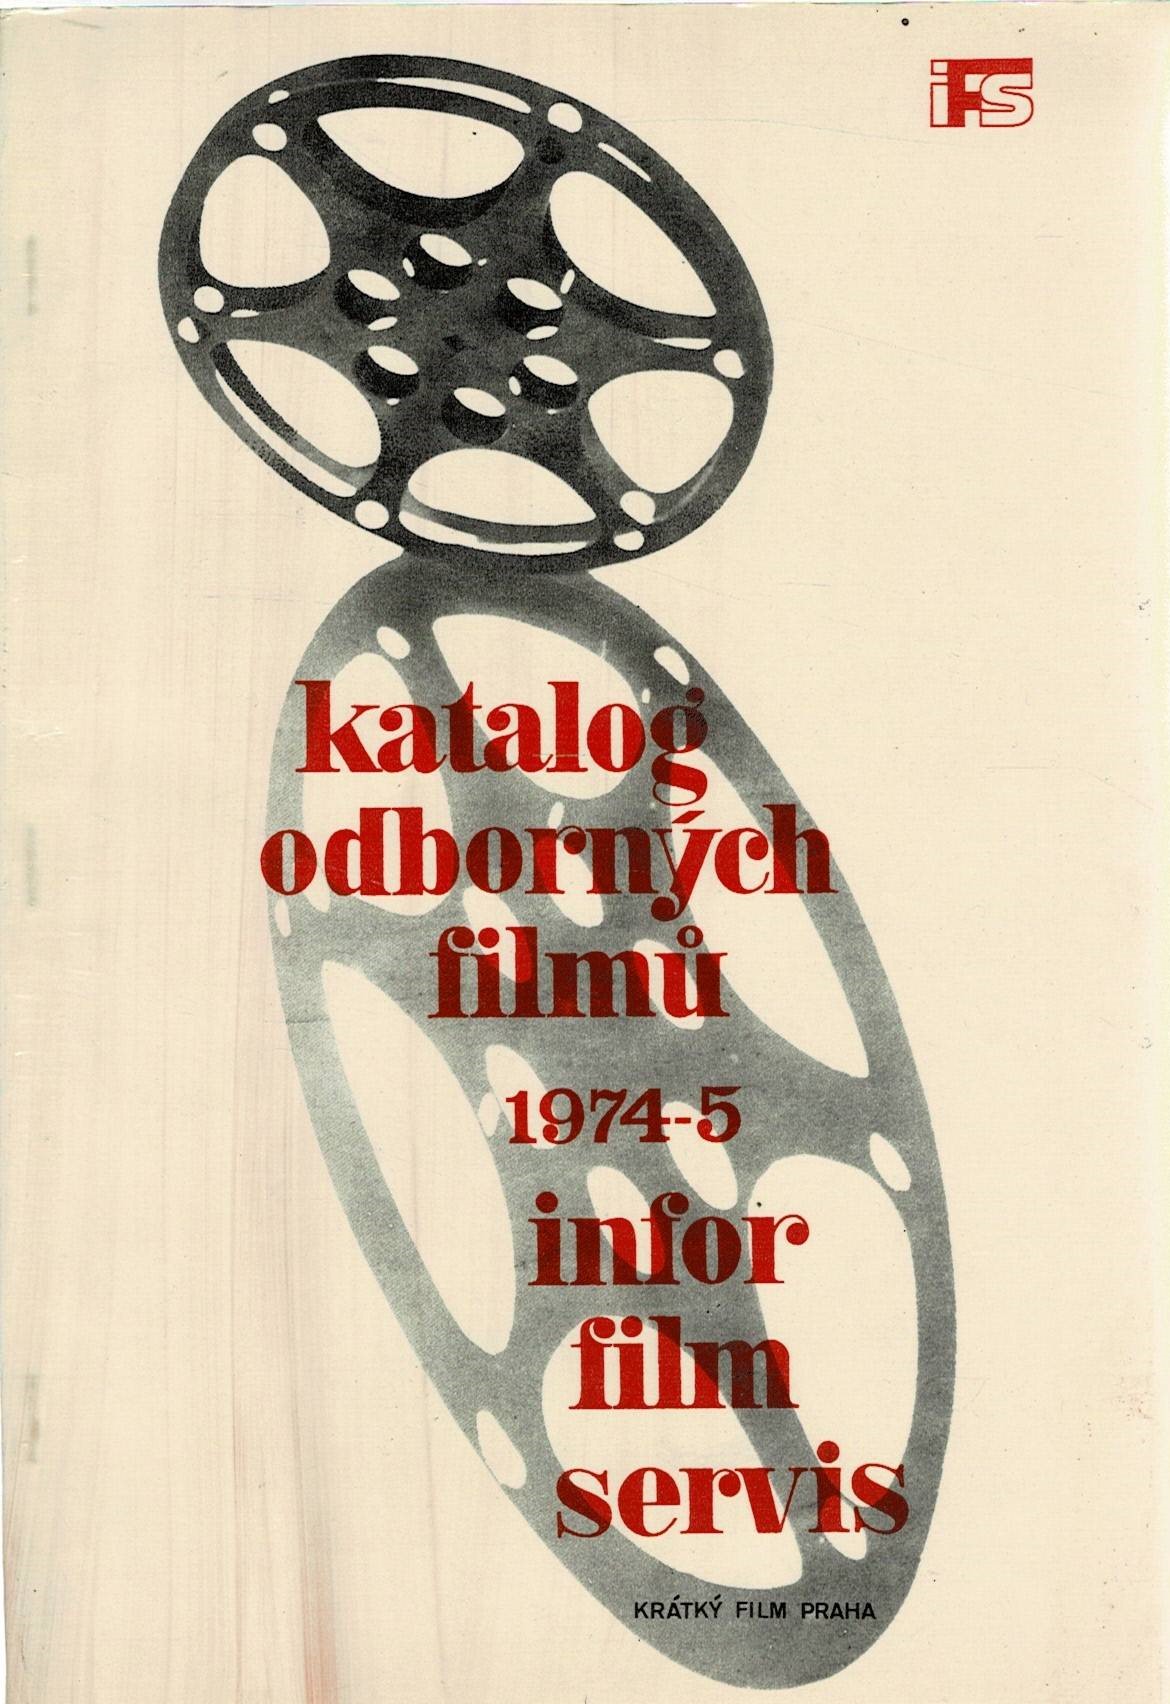 Katalog odborných filmů 1974-5